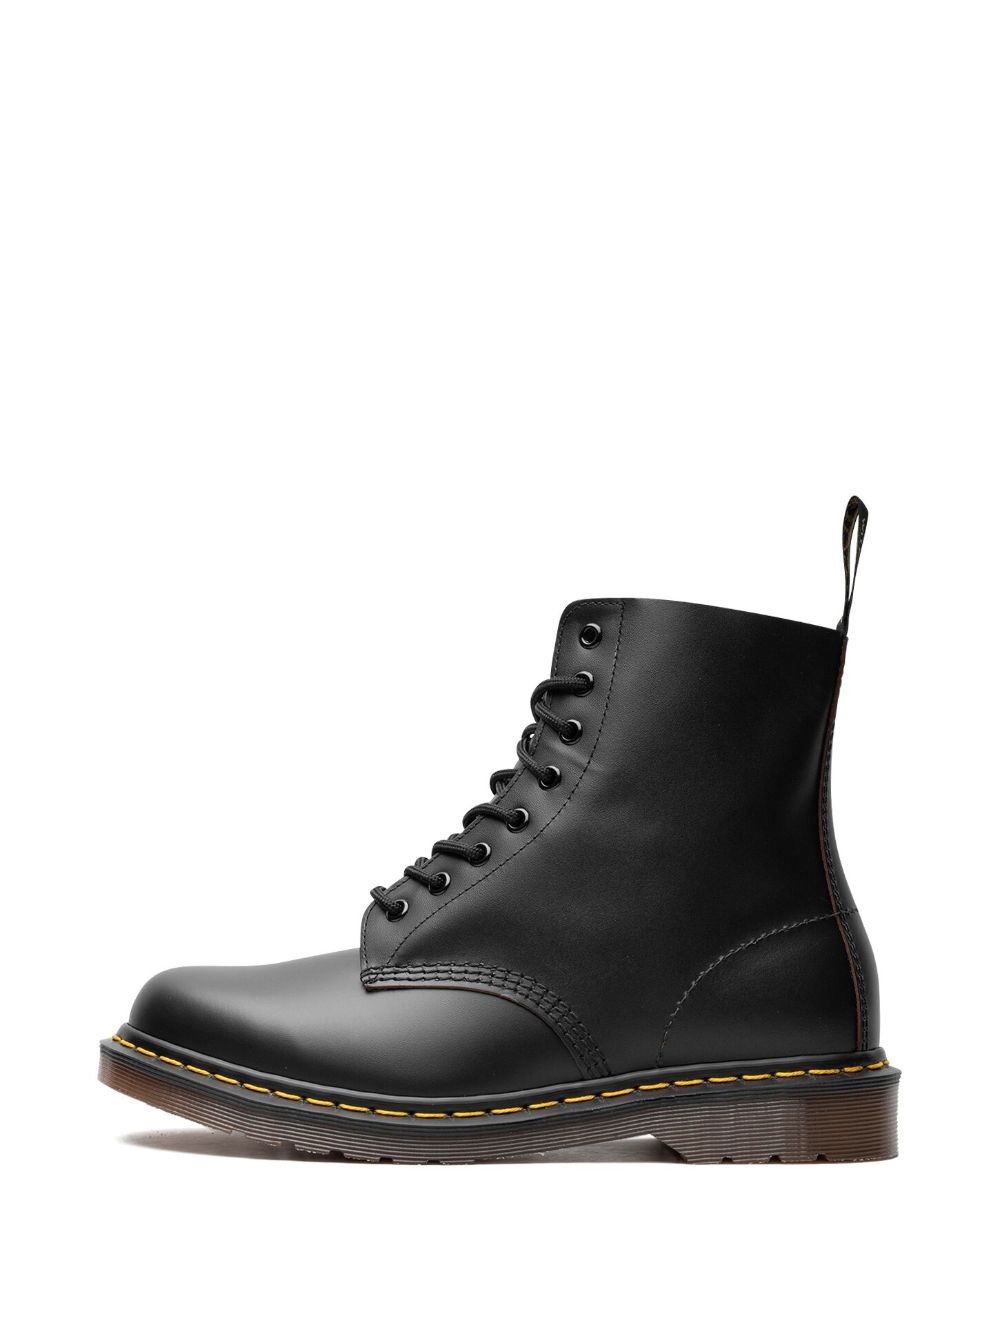 1460 Vintage 101 Quilon combat boots - 6